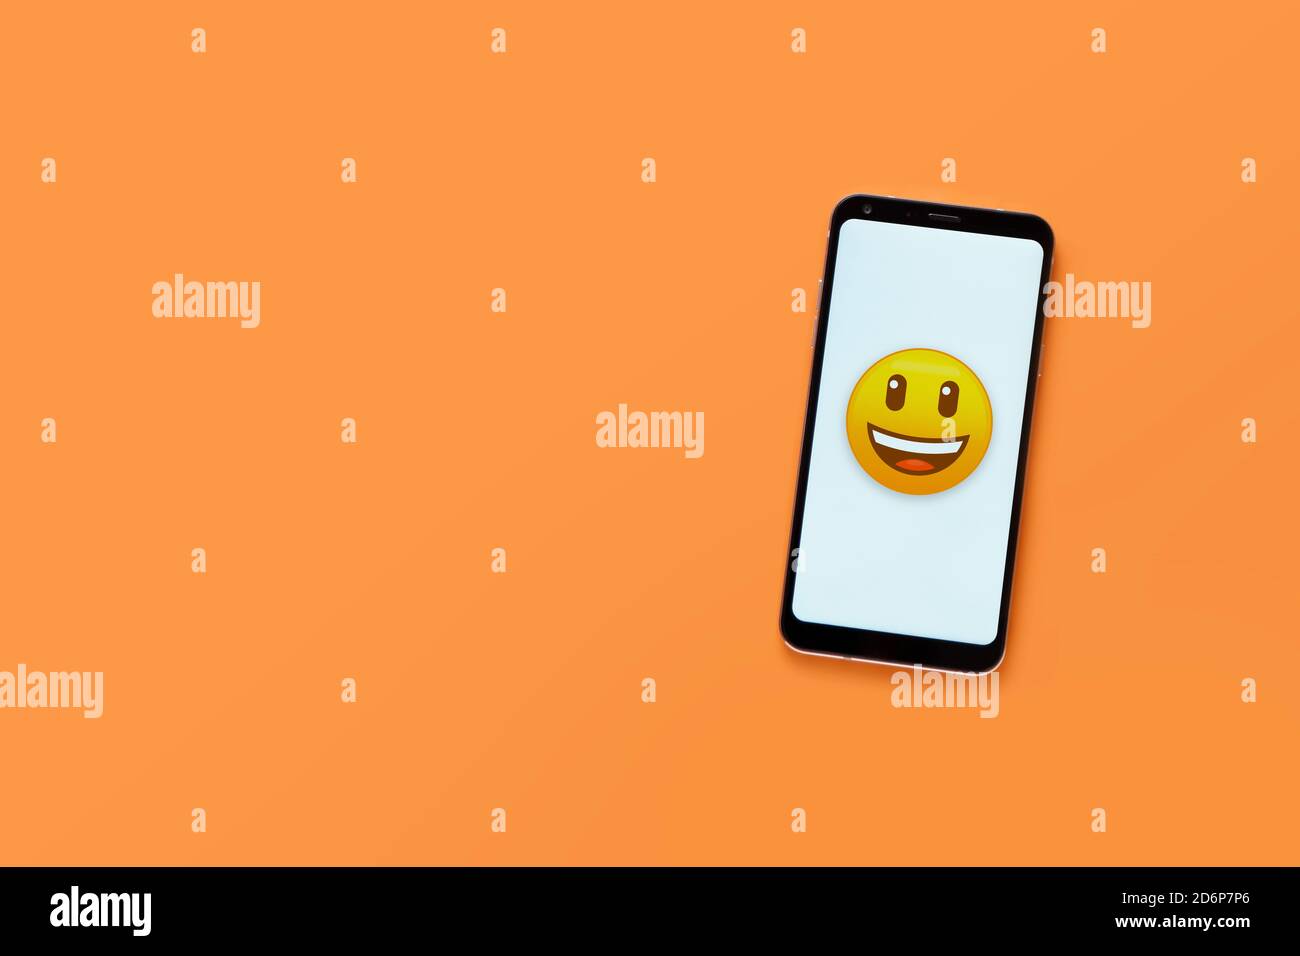 Draufsicht auf Handy mit lächelndem Gesicht Emoticon auf weißem Bildschirm. Minimalistisches Design, orangefarbener Hintergrund, Kopierbereich. Konzept für soziale Netzwerke. Stockfoto